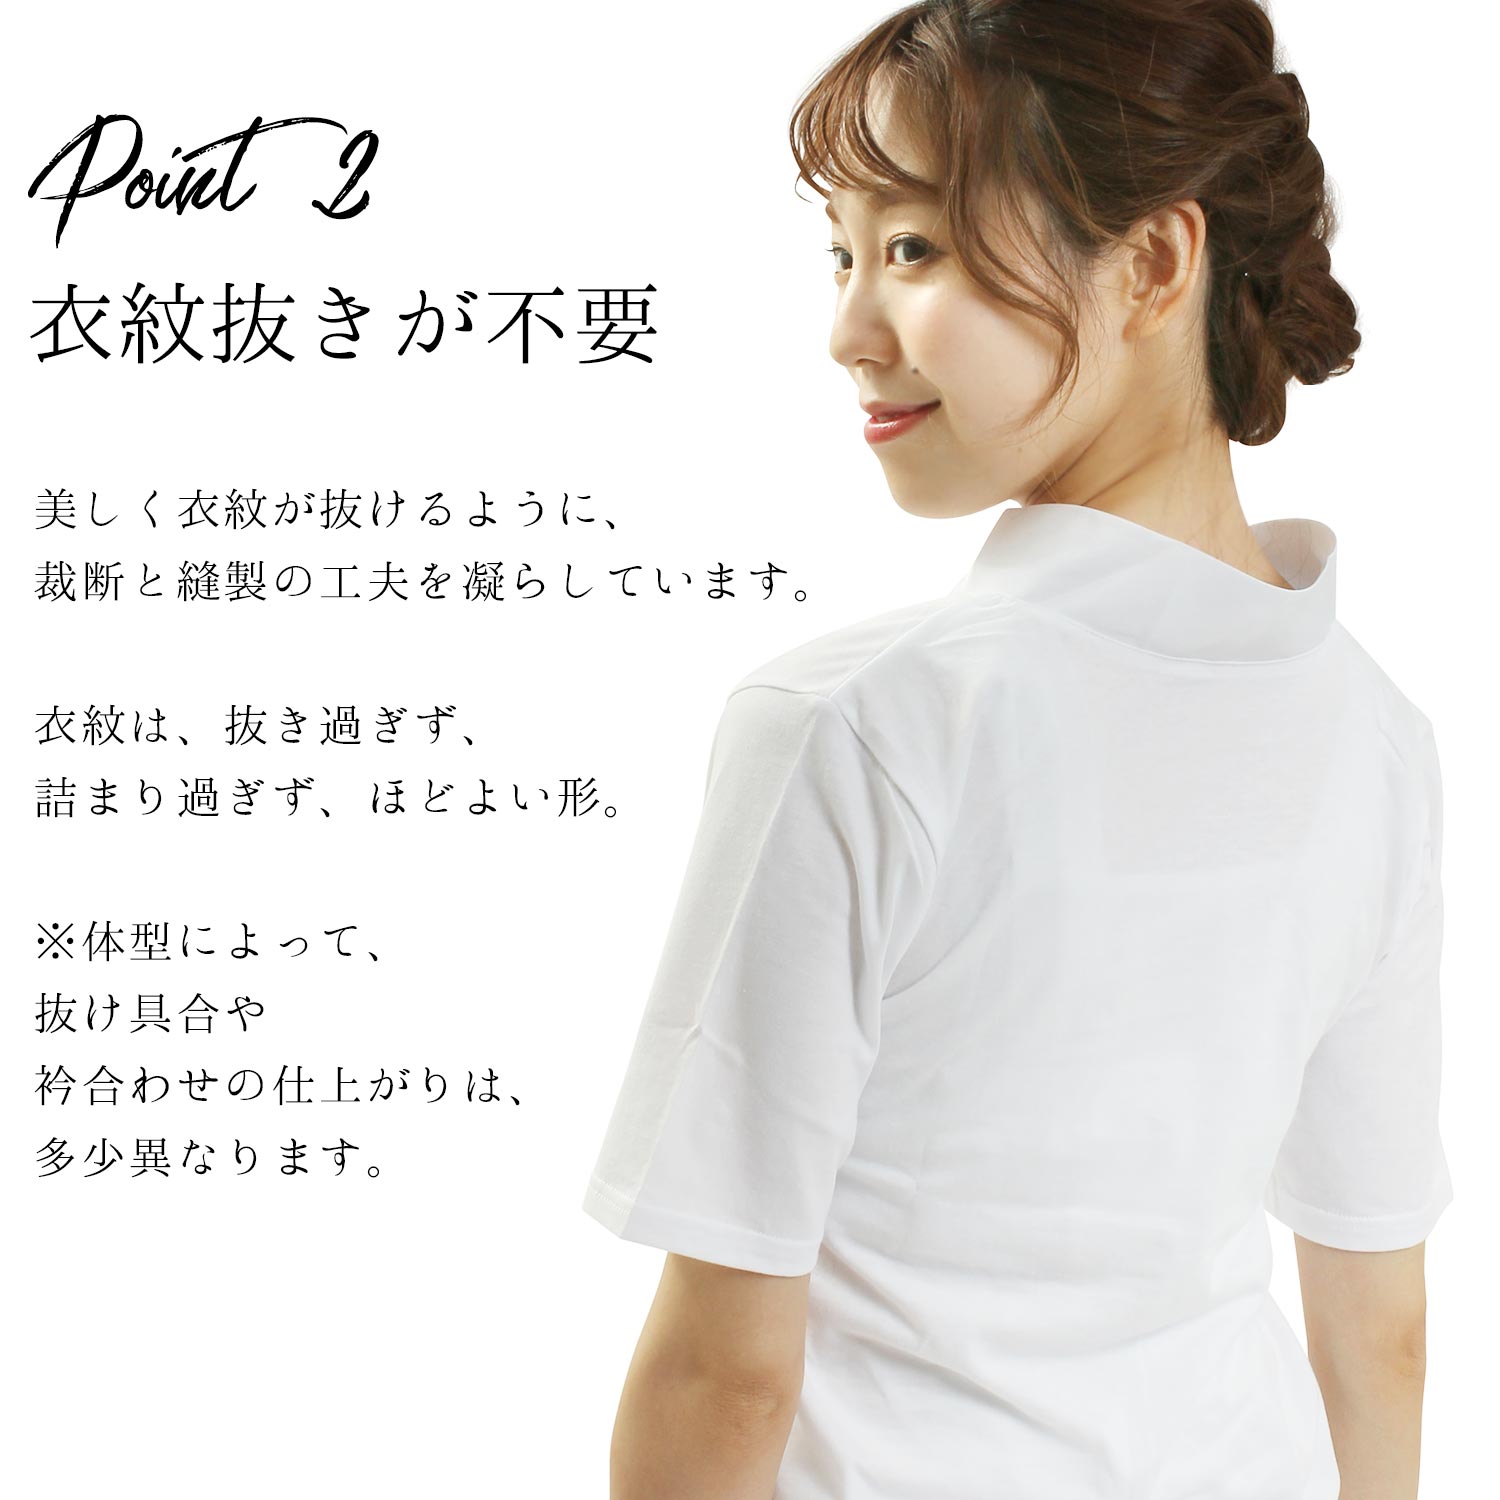 頭からすっぽりかぶるだけ らくらく簡単 Tシャツ半襦袢 襦袢 Tシャツ 半襦袢 和装下着 レディース 女性 白 半衿付き LL 半袖 超歓迎された   日本製 M L